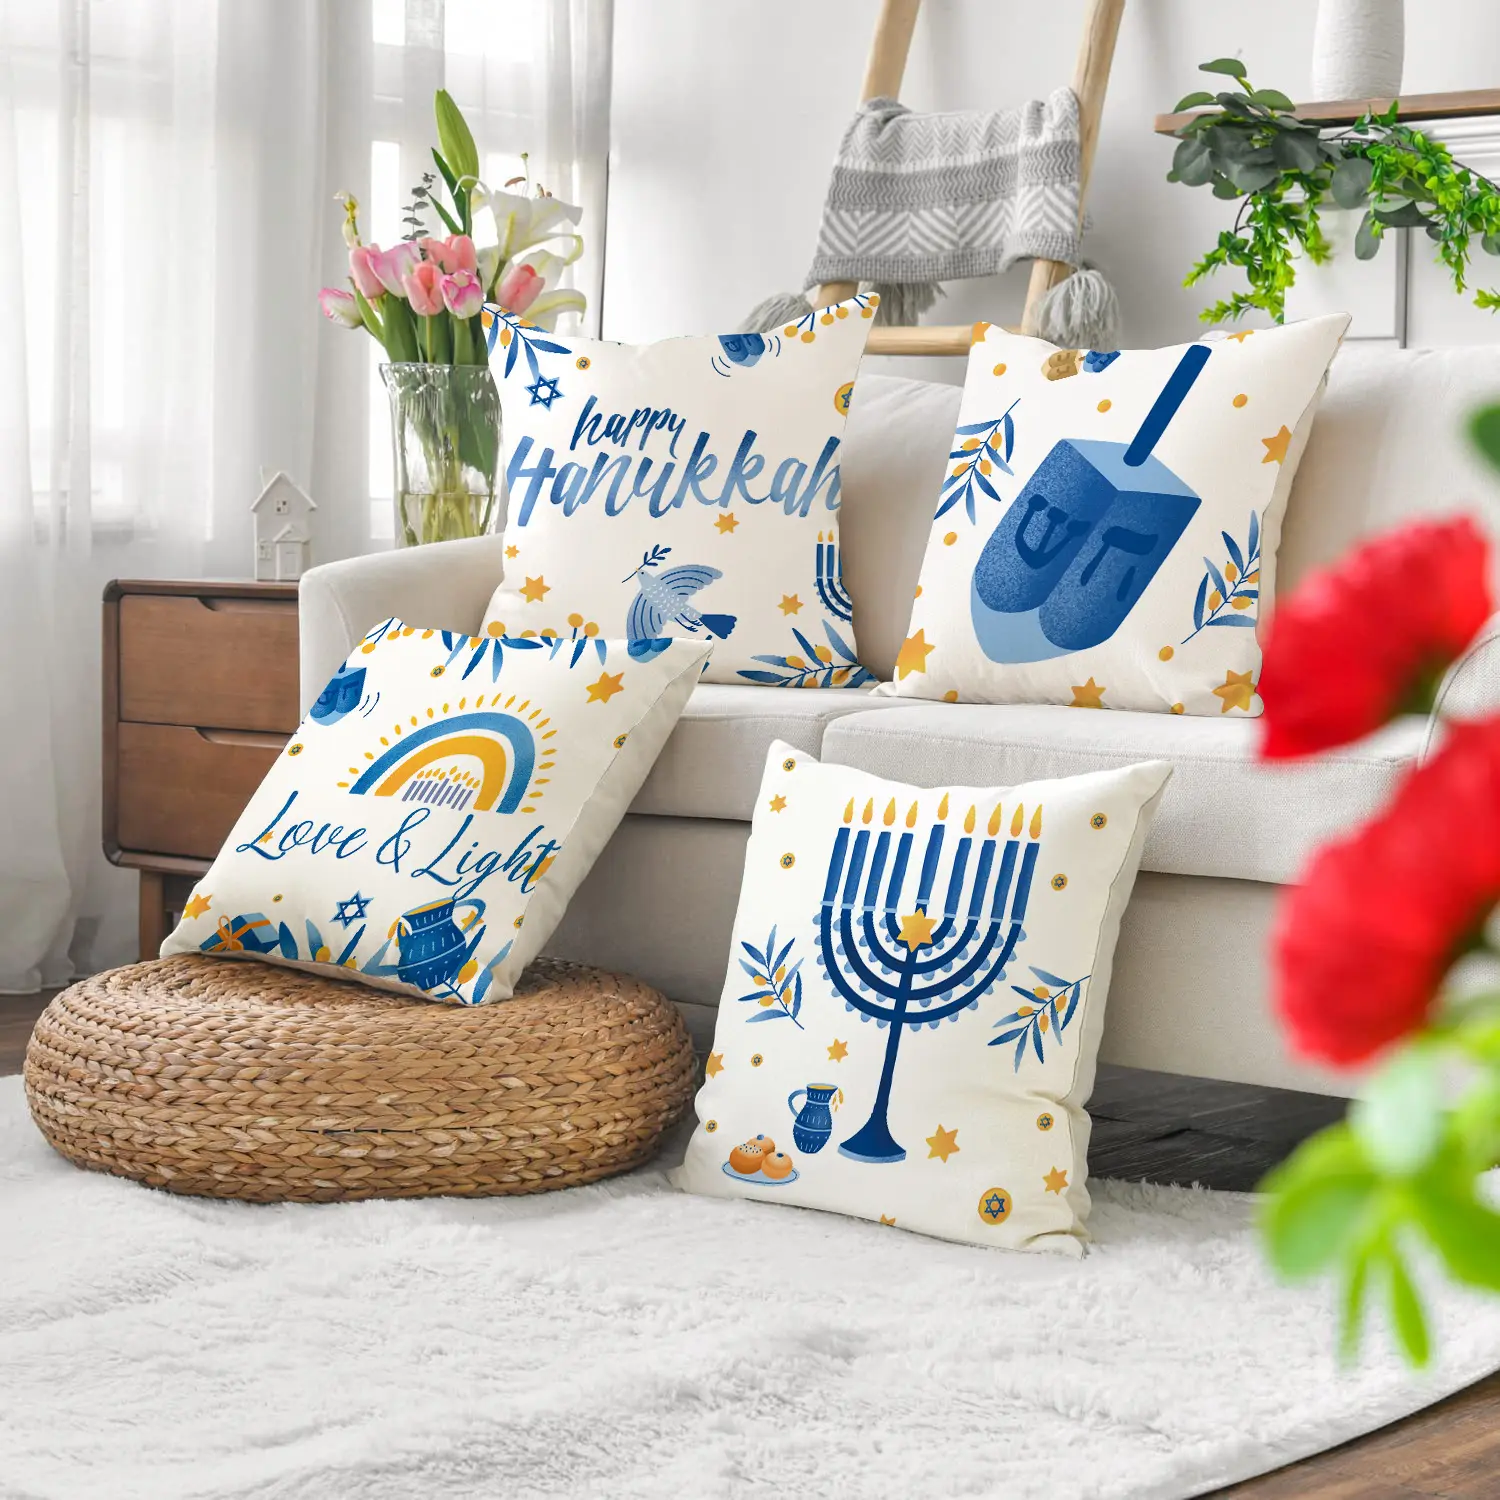 غطاء وسادة أريكة لحفلة هانوكا بسعر الجملة غطاء وسادة للاحتفال اليهودي بأضواء الشموع من الكتان غطاء وسادة مطبوع عليها أحرف لحفلة هانوكا